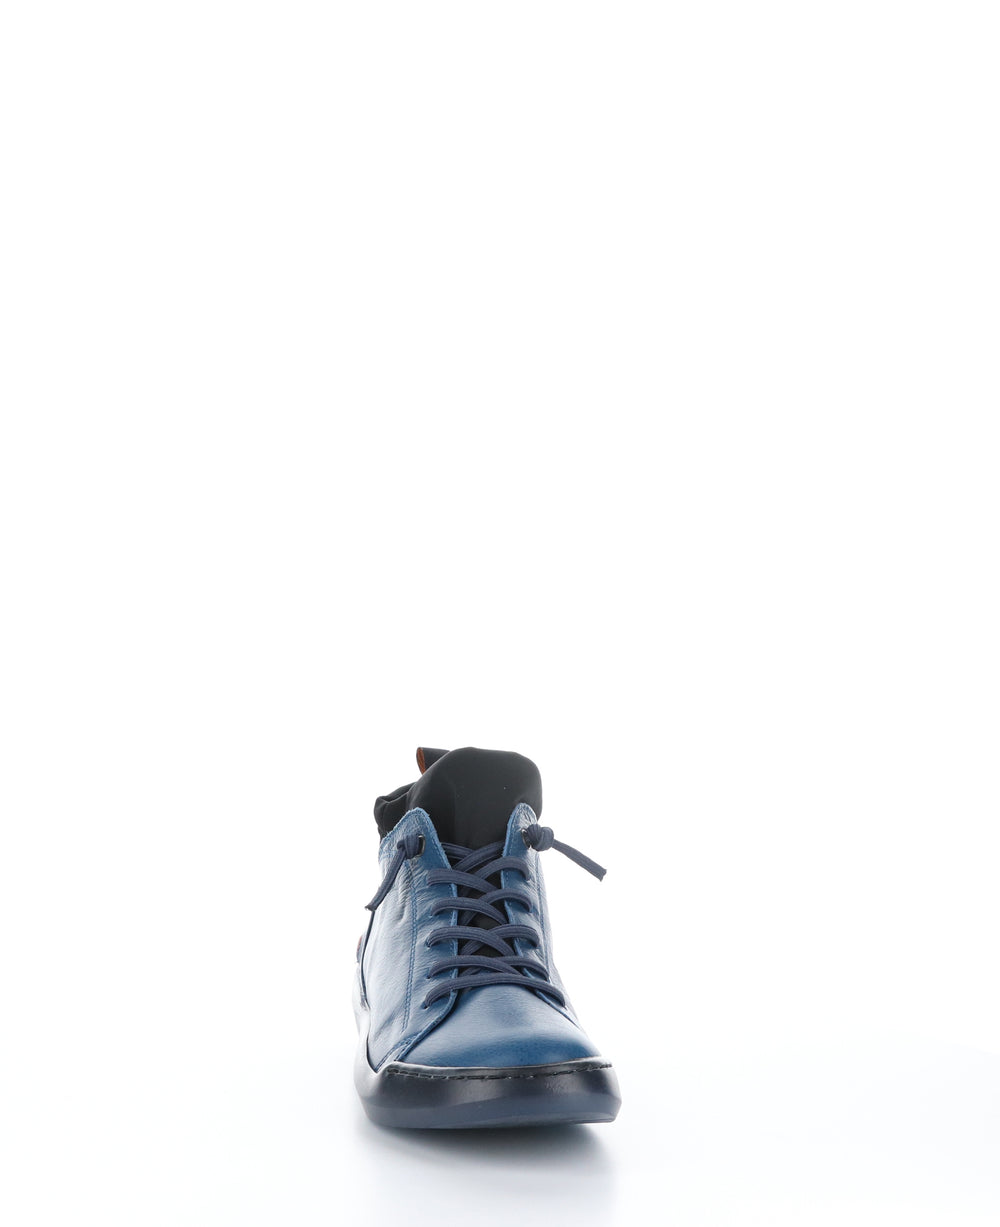 BIEL549SOF Blue Denim/Black Round Toe Shoes|BIEL549SOF Chaussures à Bout Rond in Bleu